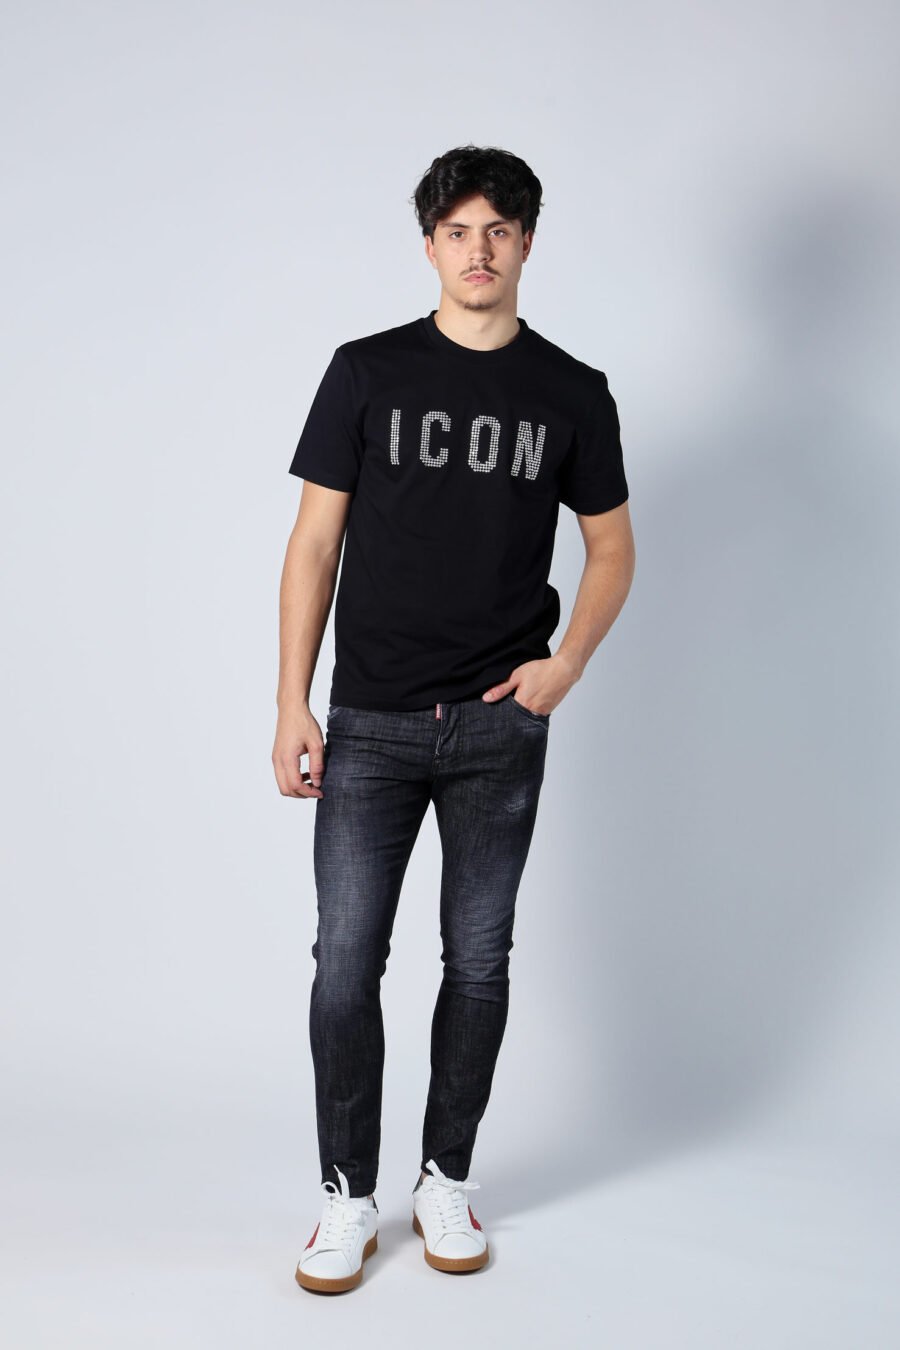 Schwarzes T-Shirt mit weißem Karo-Logo "Icon" - Untitled Catalog 05678